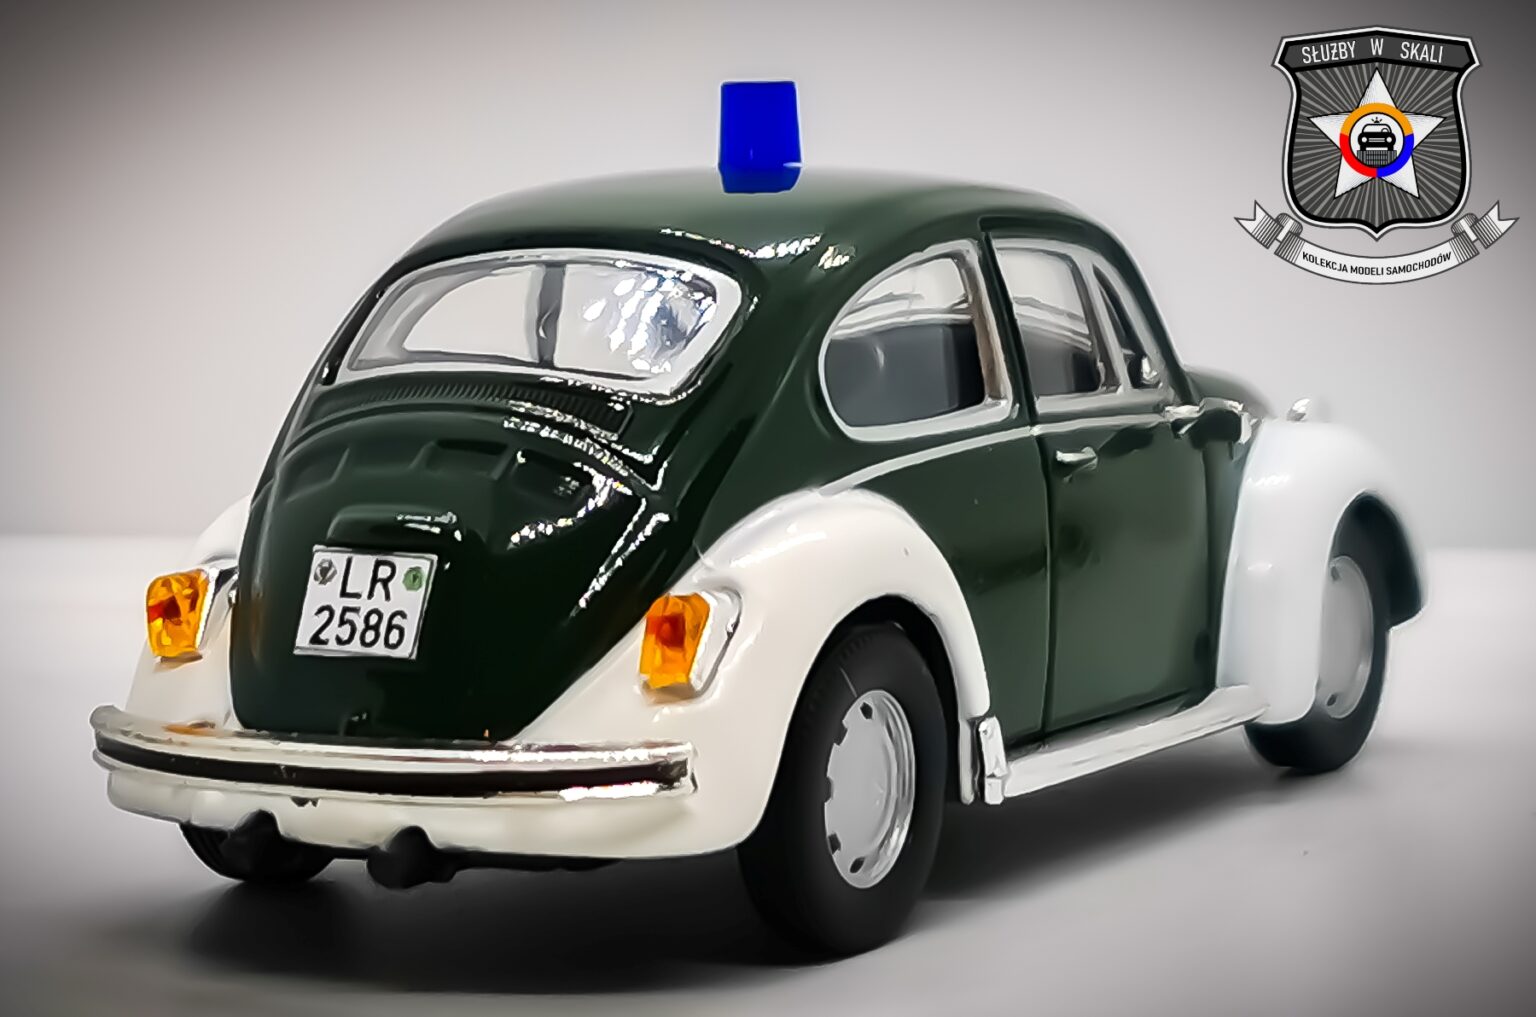 Volkswagen Beetle Polizei (Niemcy) SŁUŻBY W SKALI